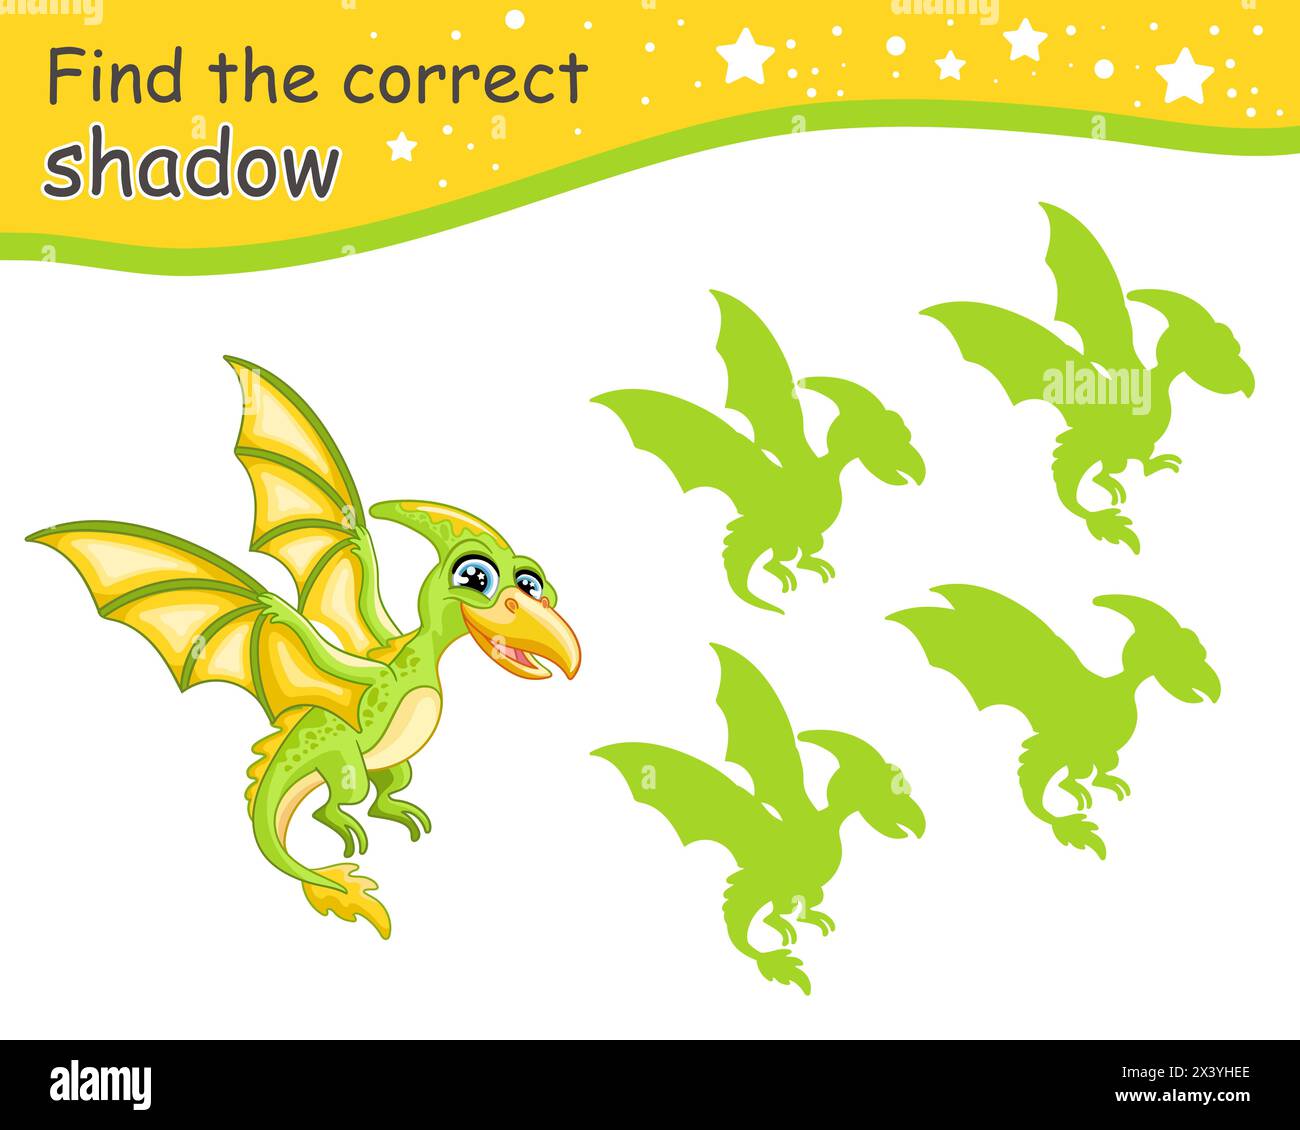 Suchen Sie den richtigen Schatten. Niedlicher Cartoon-Pterodactyl-Dinosaurier. Pädagogisches Matching-Spiel für Kinder mit Zeichentrickfigur. Aktivität, Logikspiel, Lernen Stock Vektor